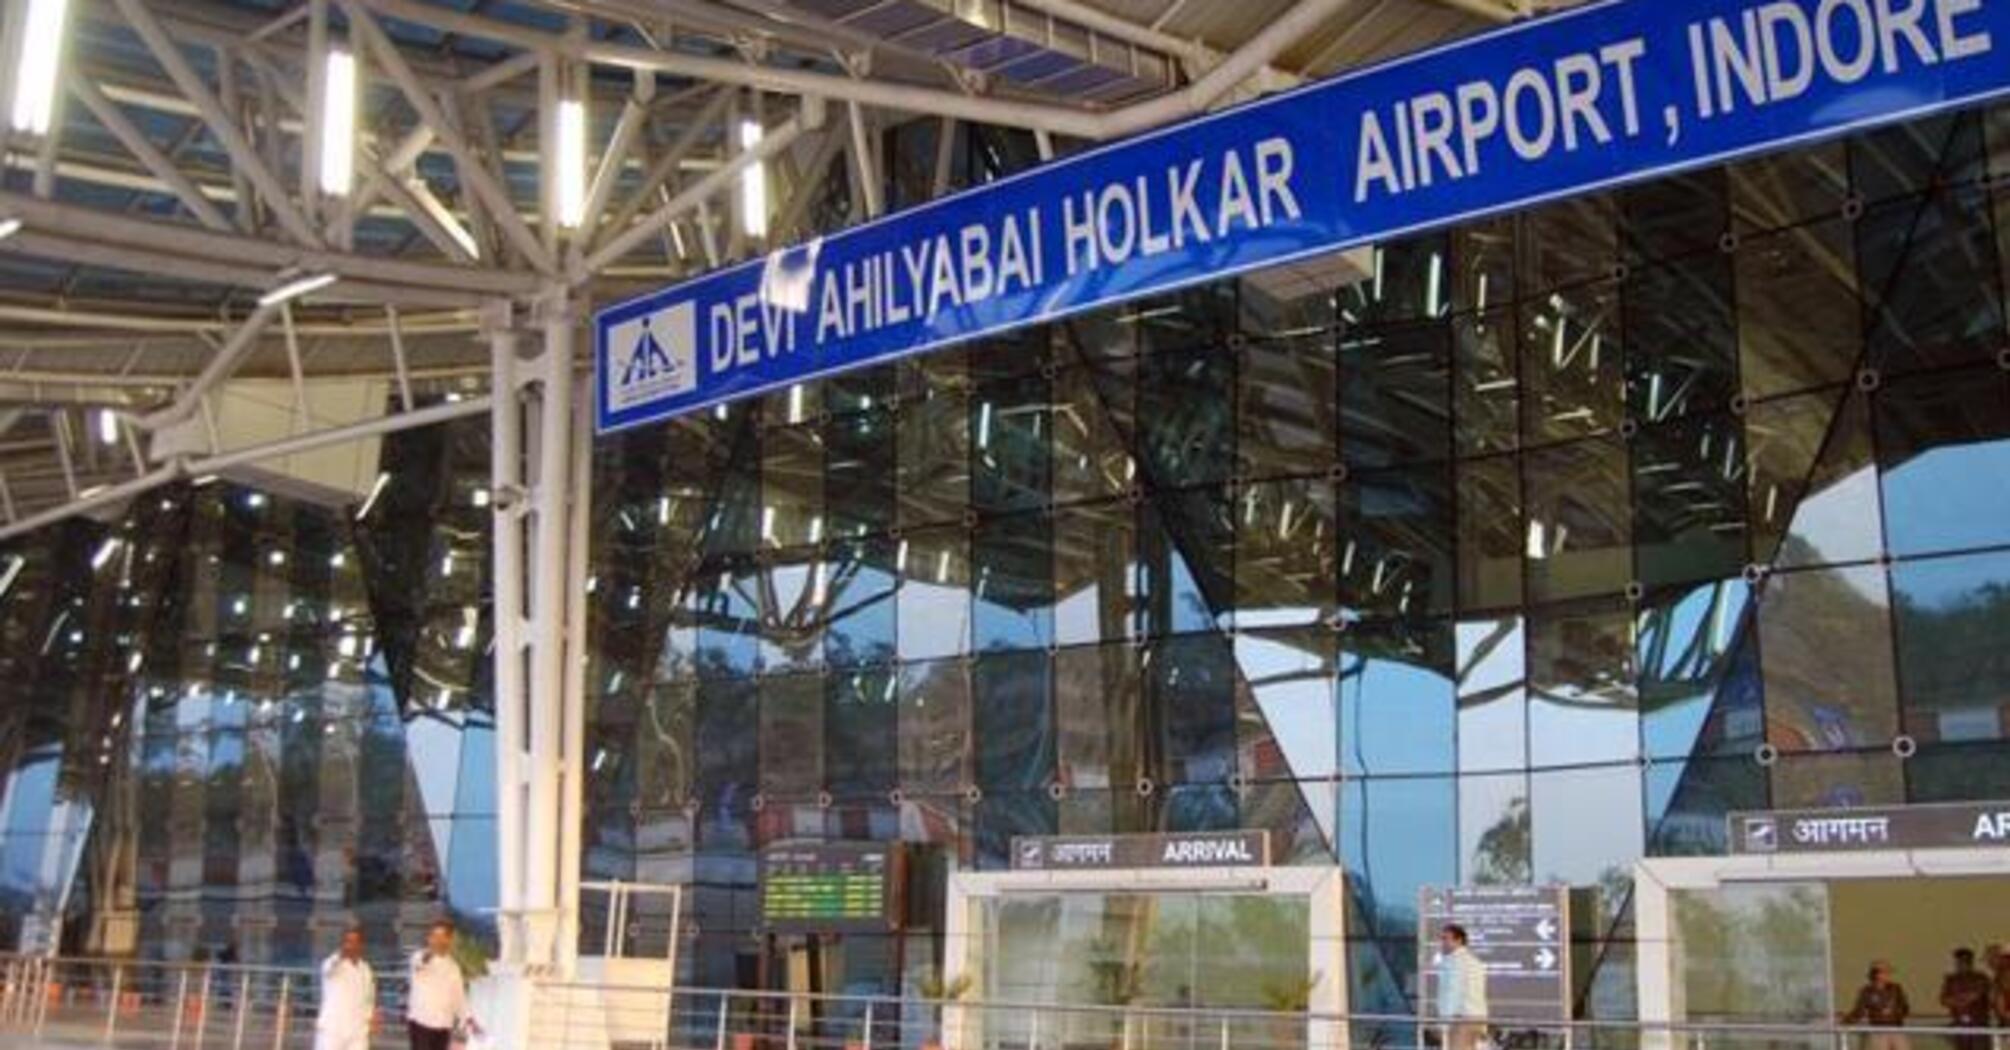 Devi Ahilya Bai Holkar International Airport